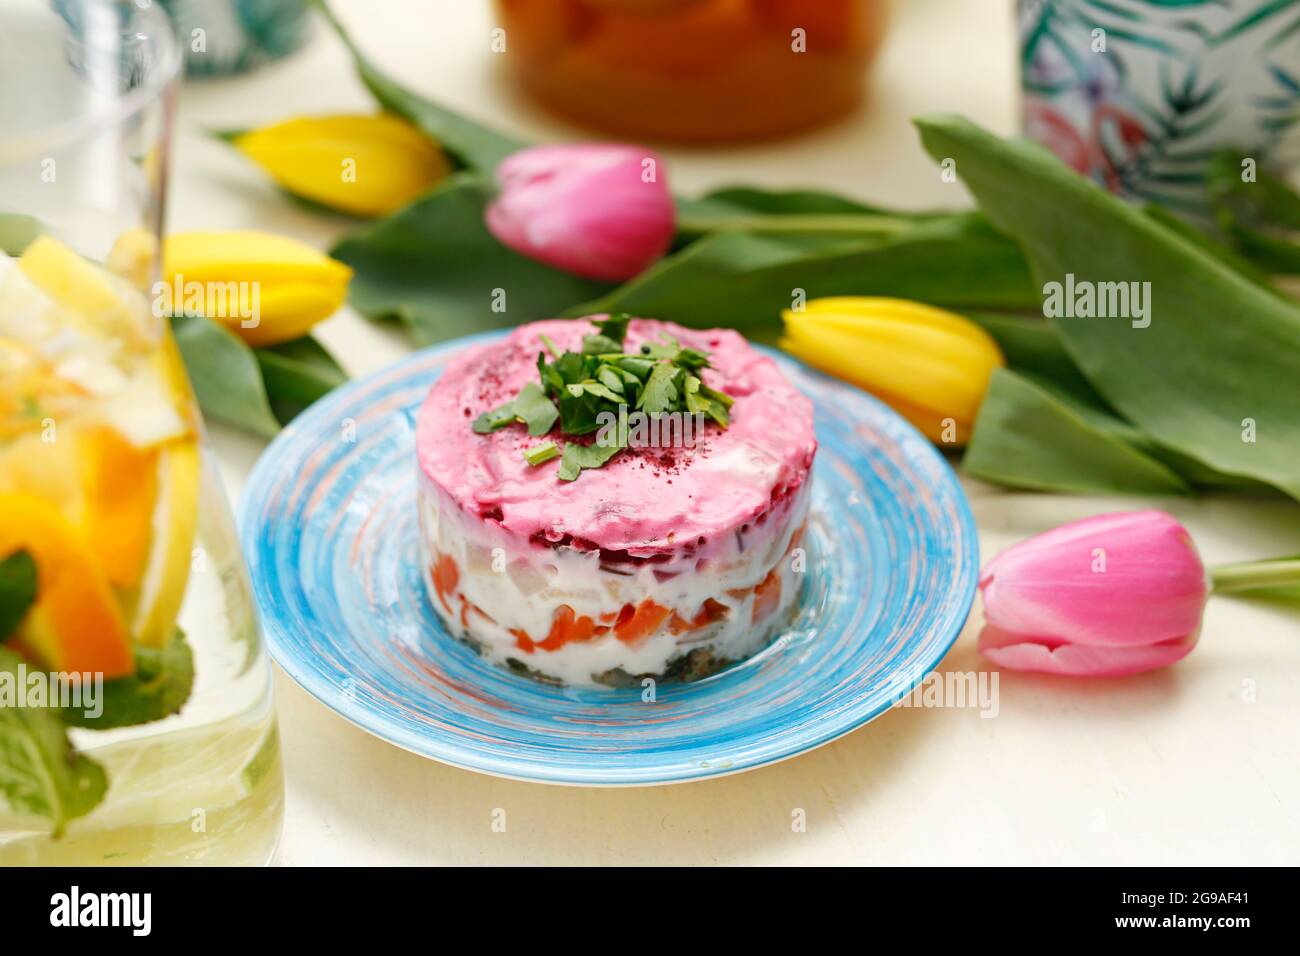 Insalata di aringhe con barbabietole. Piatto tradizionale. Un piatto colorato appetitoso. Fotografia culinaria, stile alimentare. Foto Stock